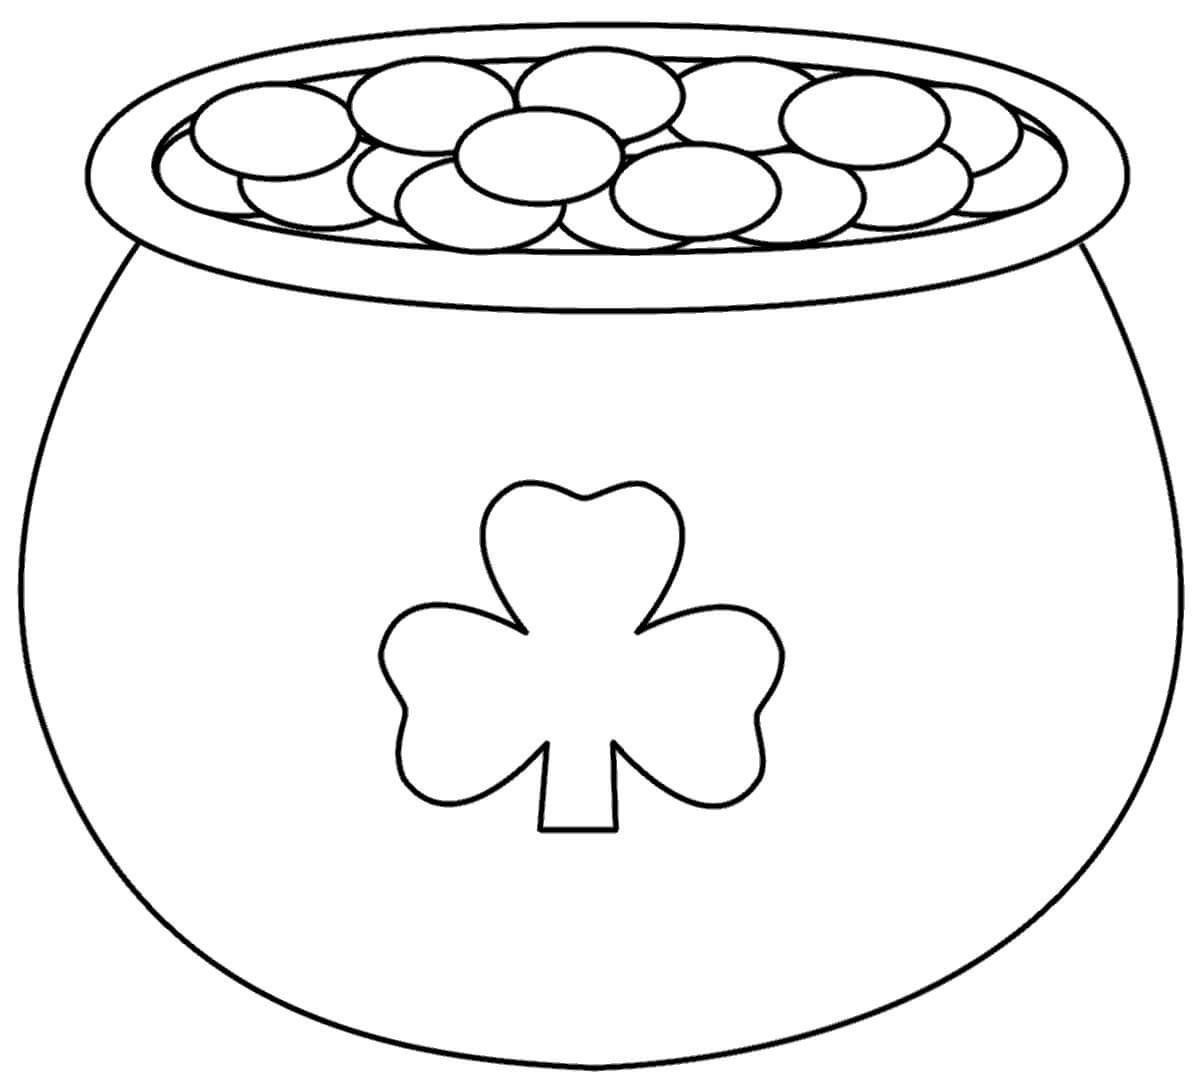 Pot met goud met Shamrock-logo